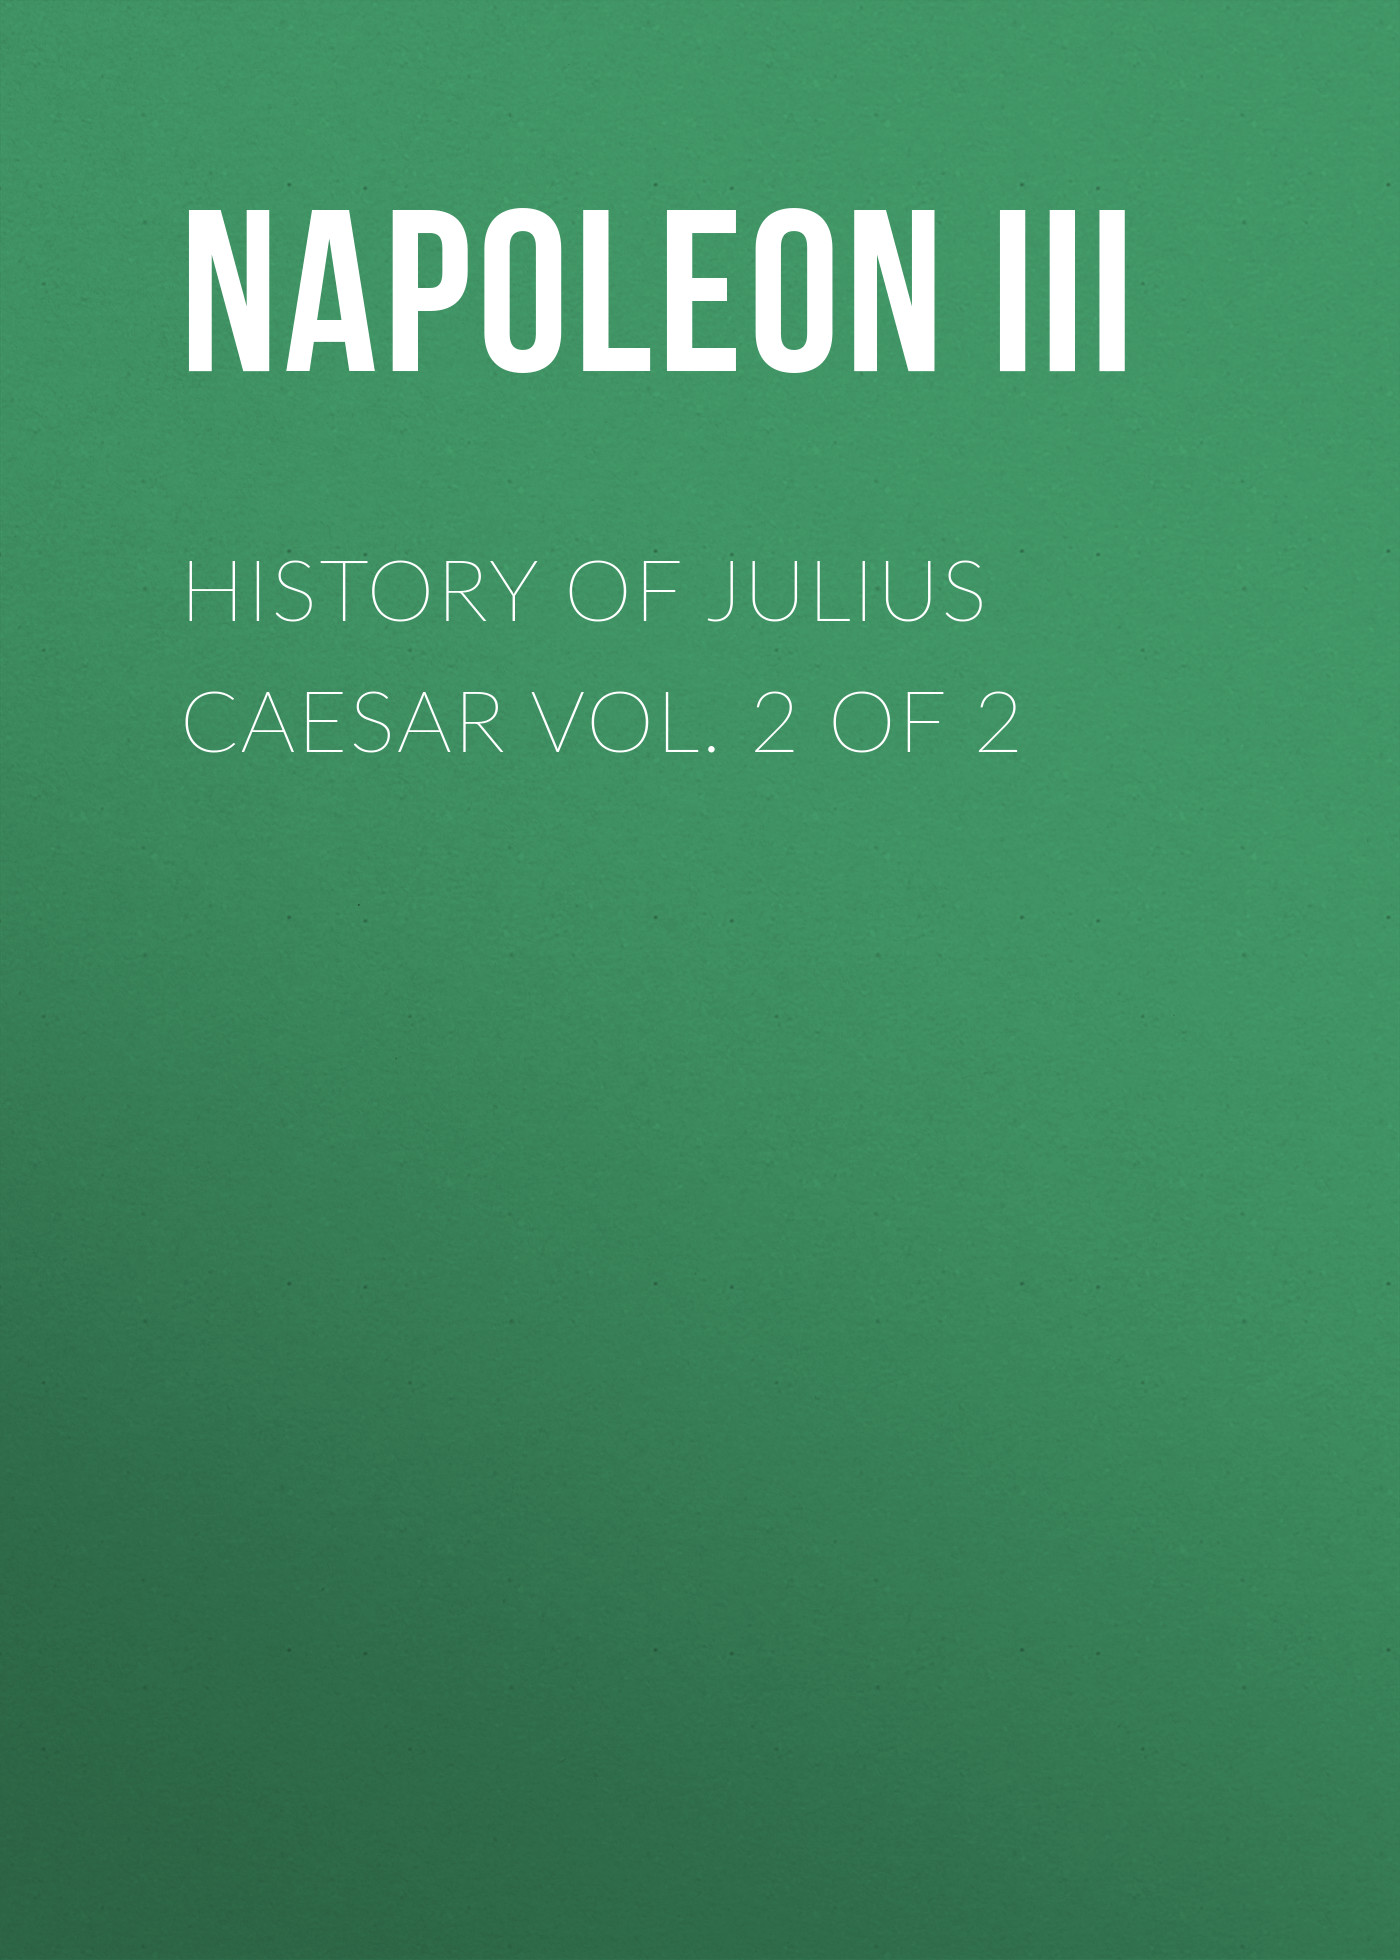 Книга History of Julius Caesar Vol. 2 of 2 из серии , созданная  Napoleon III, может относится к жанру Зарубежная старинная литература, Зарубежная классика, Биографии и Мемуары. Стоимость электронной книги History of Julius Caesar Vol. 2 of 2 с идентификатором 25291819 составляет 0 руб.